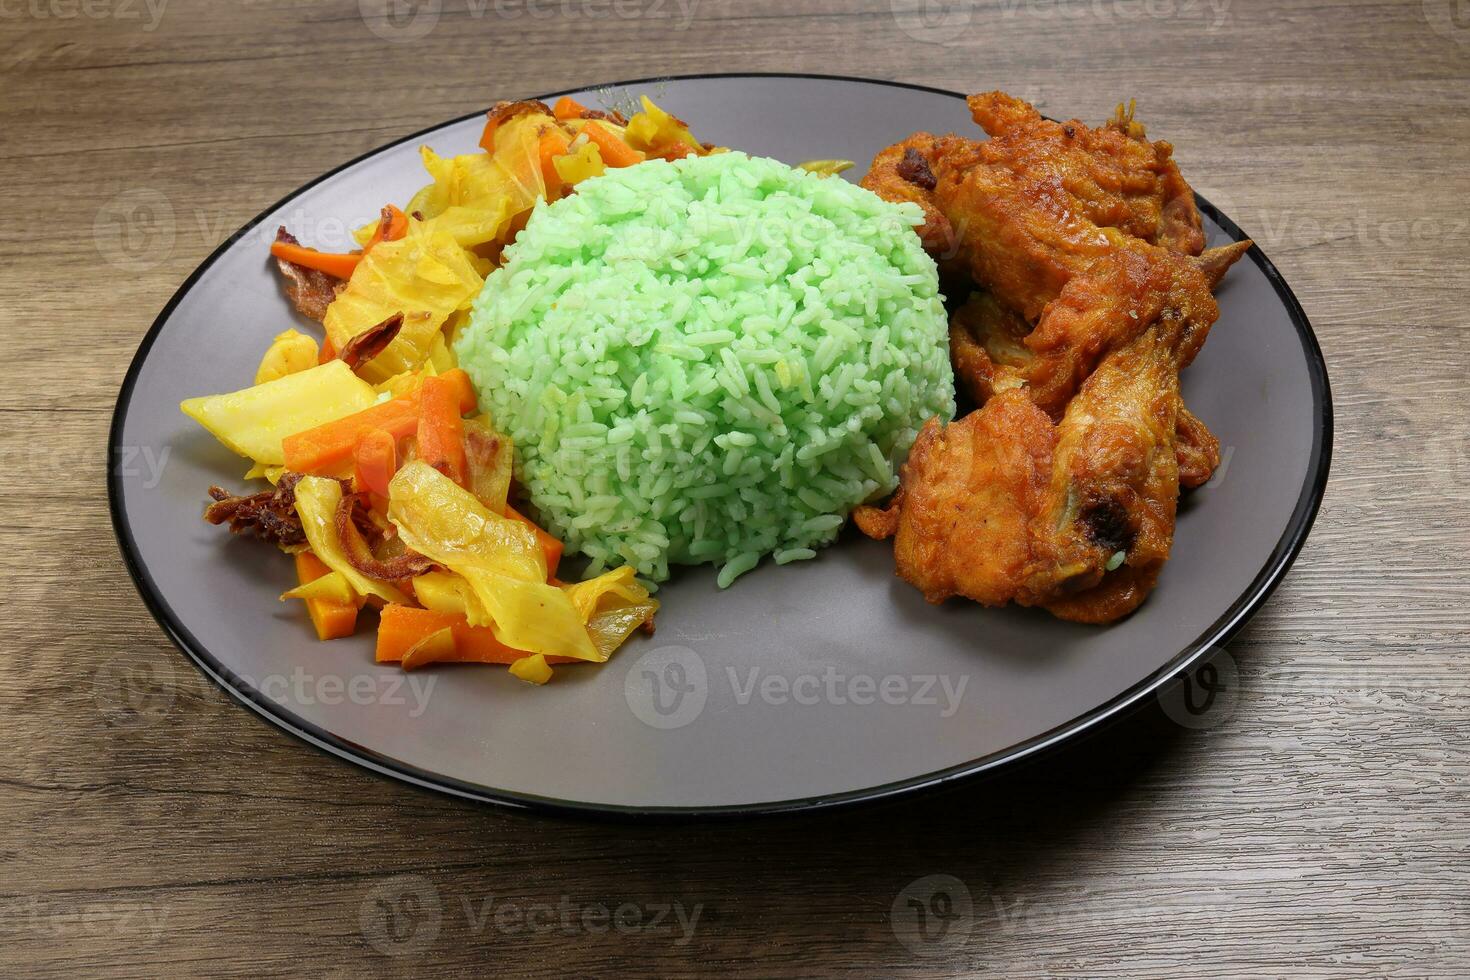 al vapor verde arroz condimentado profundo frito pollo repollo Zanahoria vegetal warung nasi ayam goreng en oscuro gris plato de madera antecedentes foto